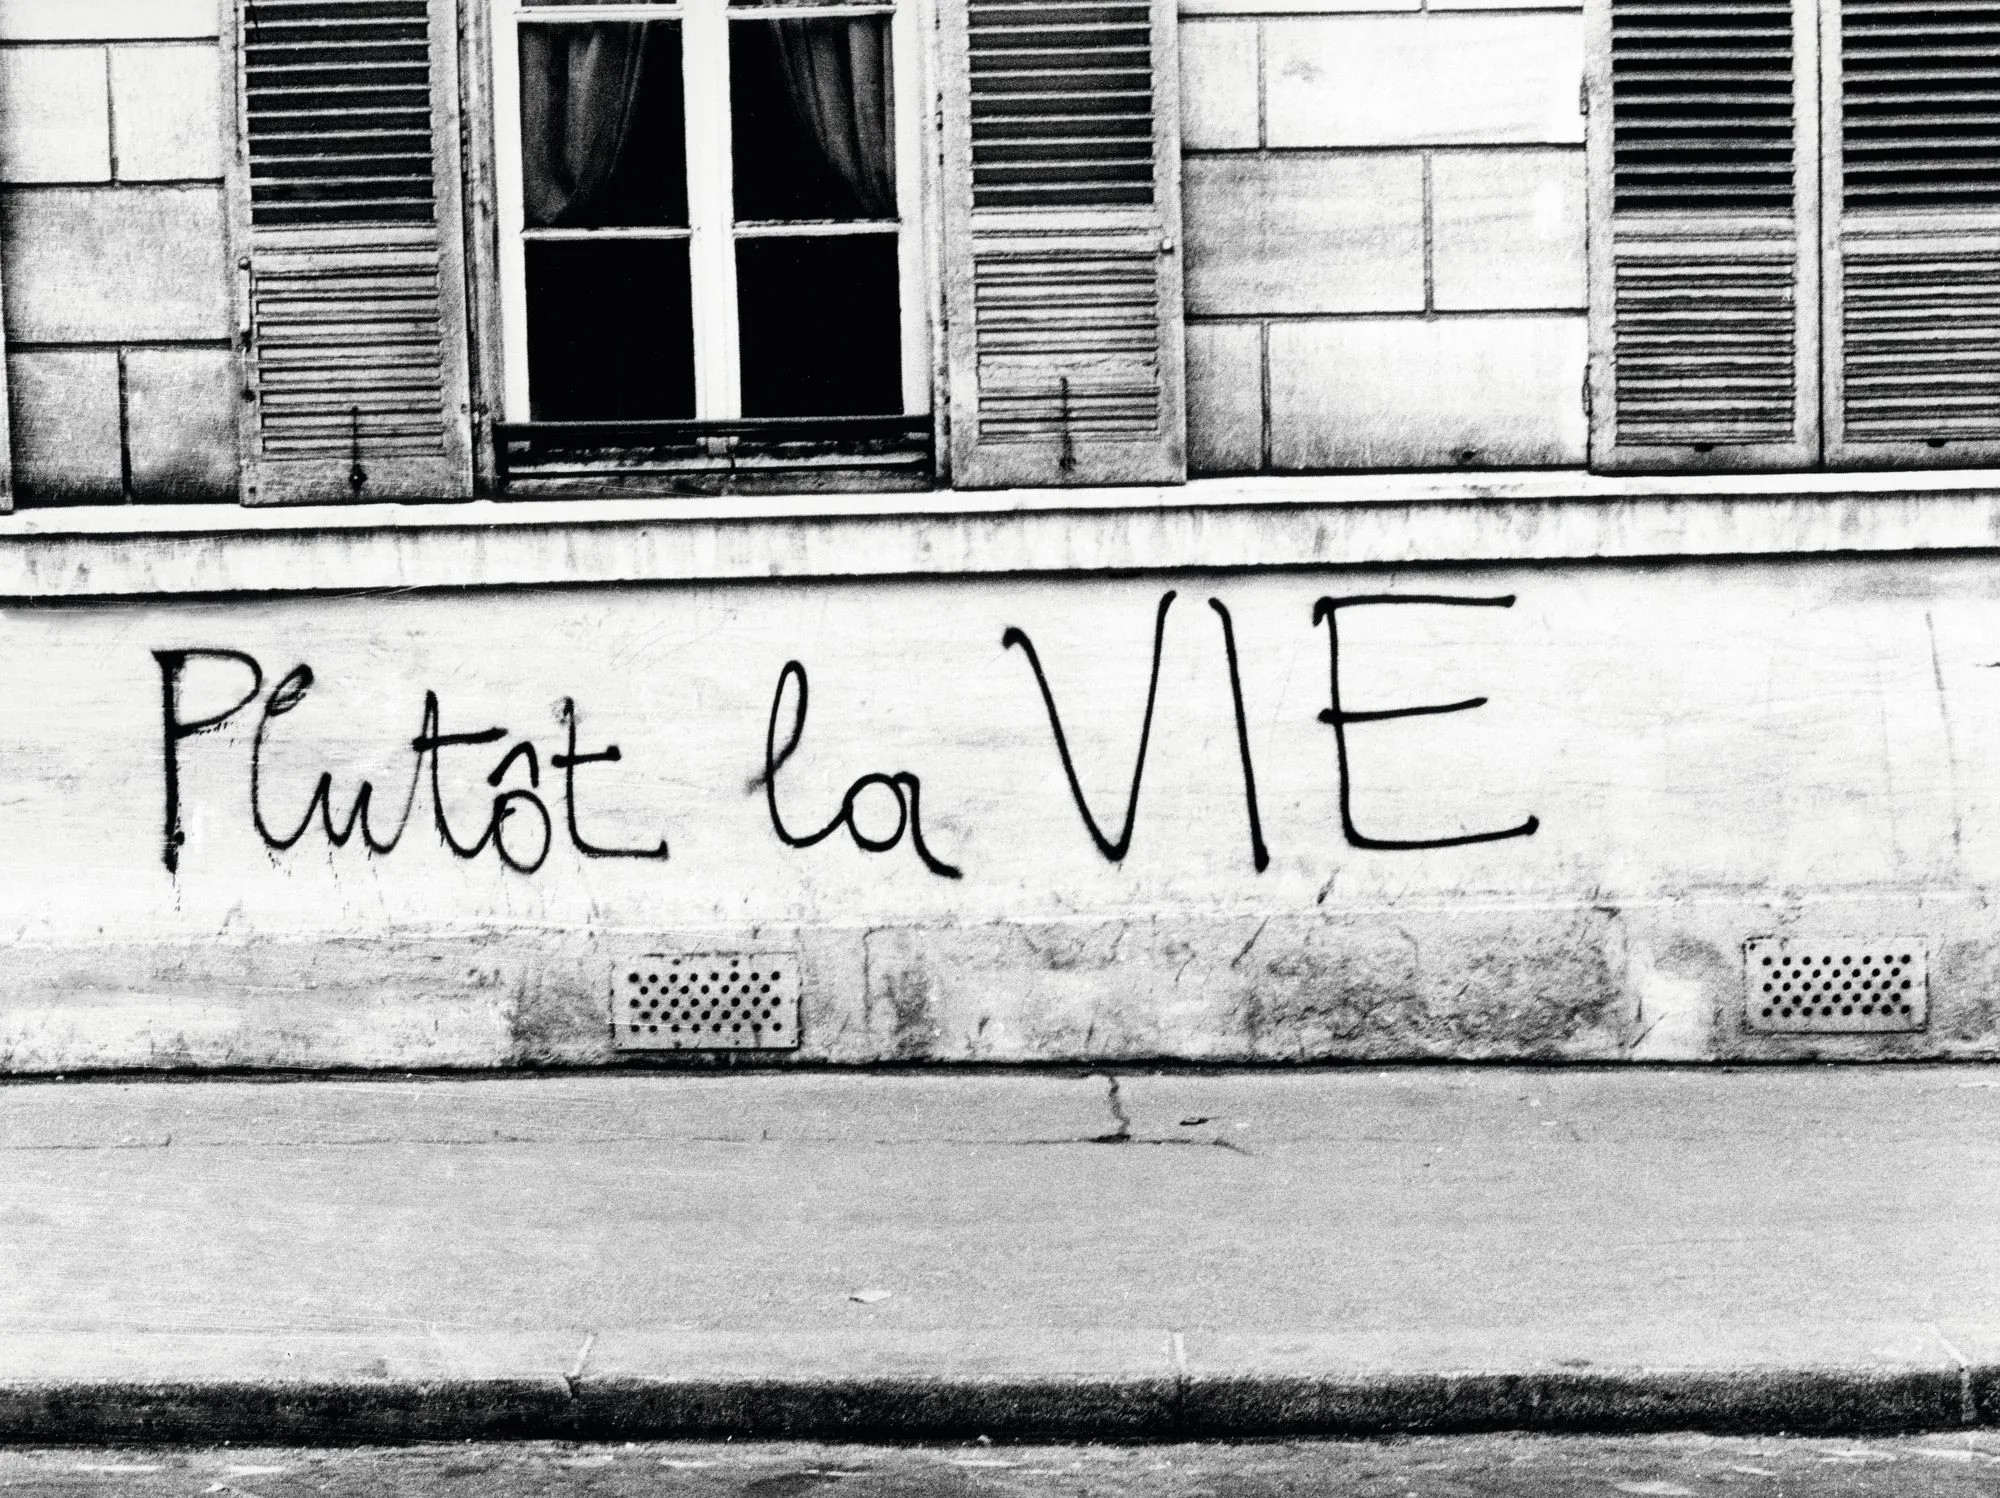 « Plutôt la VIE », 3 mai 1968, photographie, Paris.